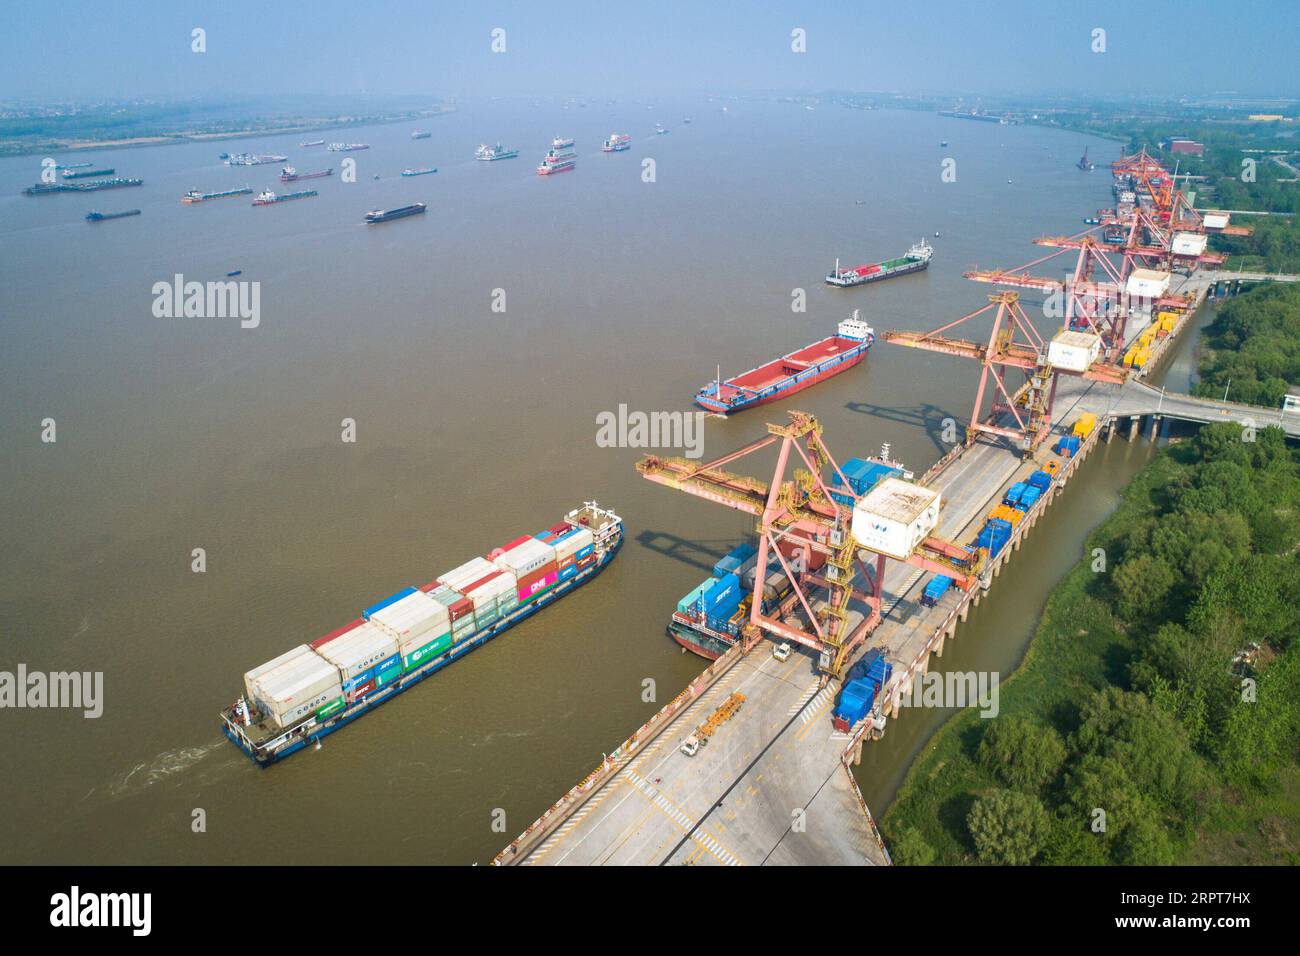 200412 -- WUHAN, 12. April 2020 -- Foto vom 12. April 2020 zeigt einen Blick auf den Yangluo-Hafen in Wuhan, der zentralchinesischen Provinz Hubei. Wuhan, die Megastadt in Zentralchina, hob nach fast 11 Wochen Lockdown die Beschränkungen für die Ausreise ab dem 8. April auf, um die Ausbreitung von COVID-19 einzudämmen. Die aufgrund der COVID-19-Pandemie in den Häfen angesammelten Ladungen werden ebenfalls abtransportiert, seit die Wasserhäfen in Wuhan ihren Betrieb wieder aufgenommen haben. CHINA-HUBEI-WUHAN-SHIPPING CN XiaoxYijiu PUBLICATIONxNOTxINxCHN Stockfoto